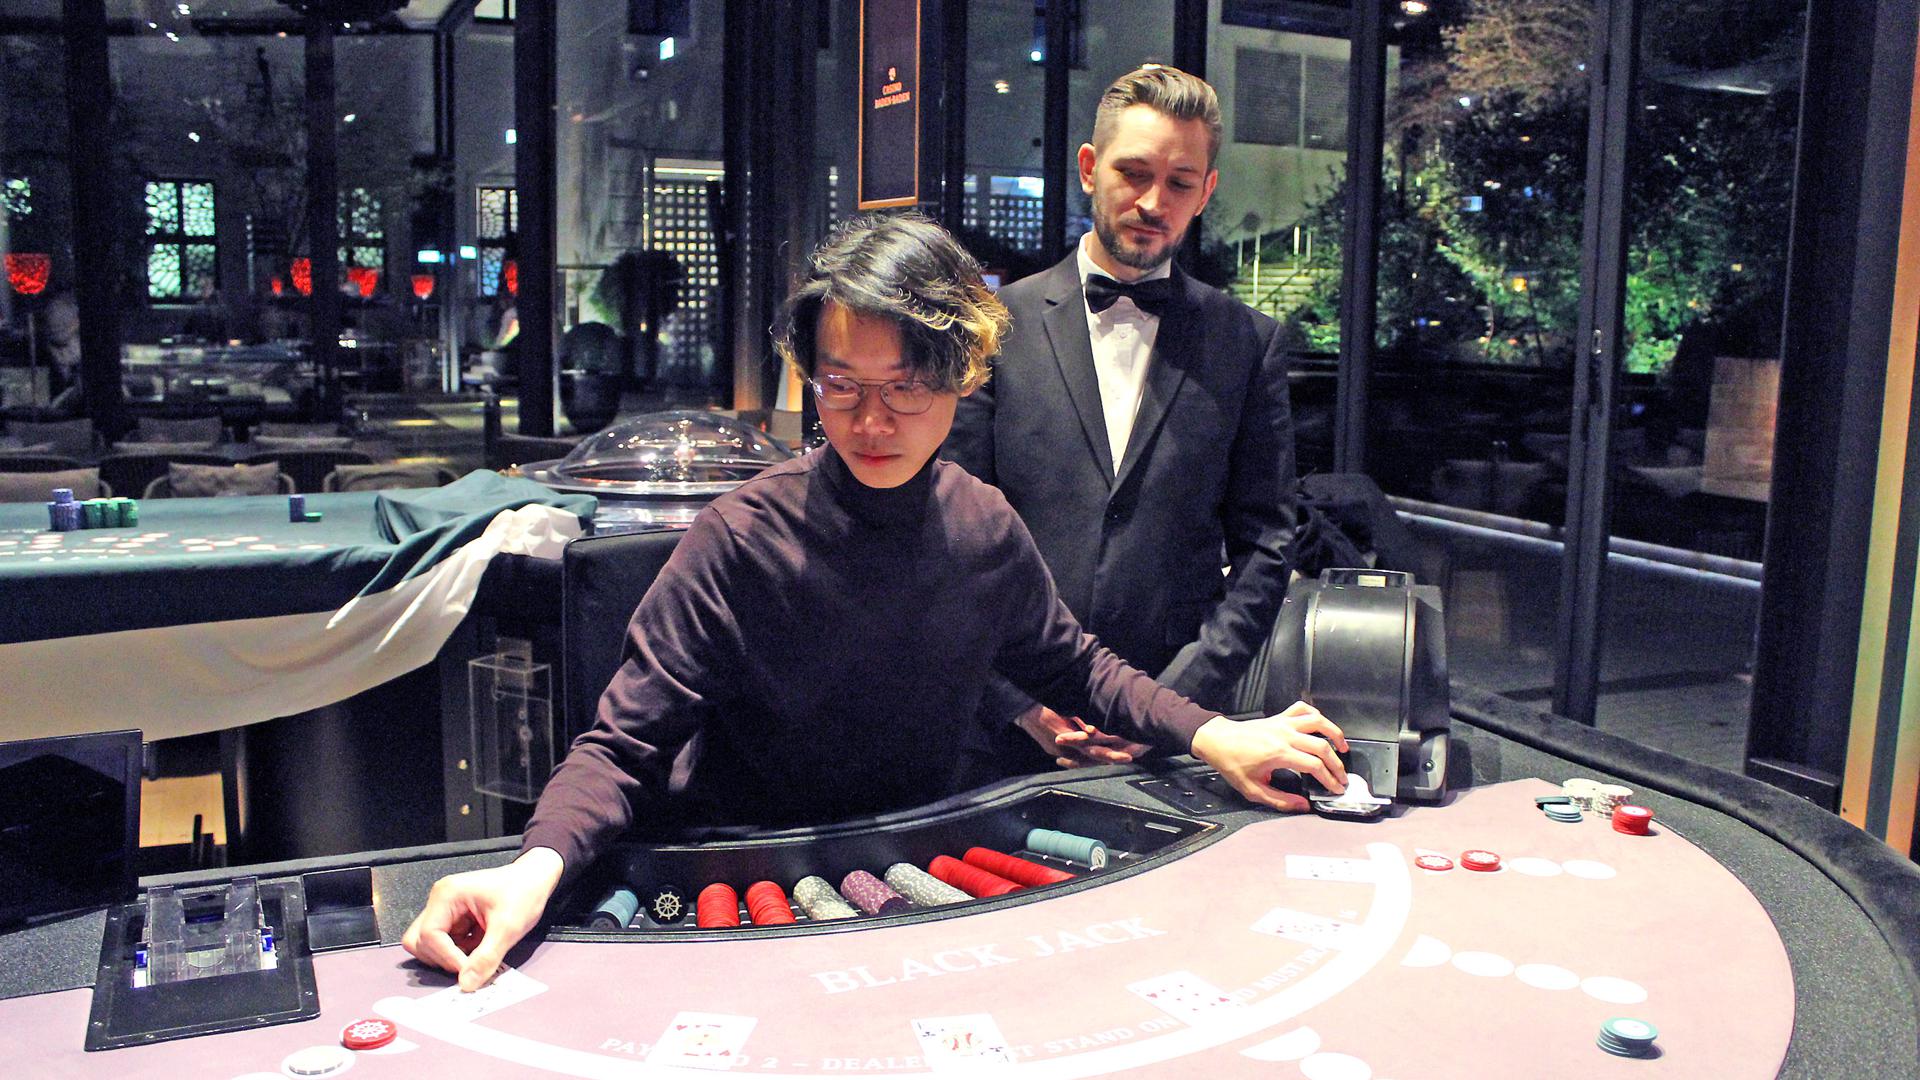 Lukrativer Nebenjob im Casino: Mathematik-Student Huy Tran aus Baden-Baden absolviert gerade einen Kartenspielkurs im Casino. Ausbilder Alexander Clappier schaut ihm am Black-Jack-Tisch über die Schulter.